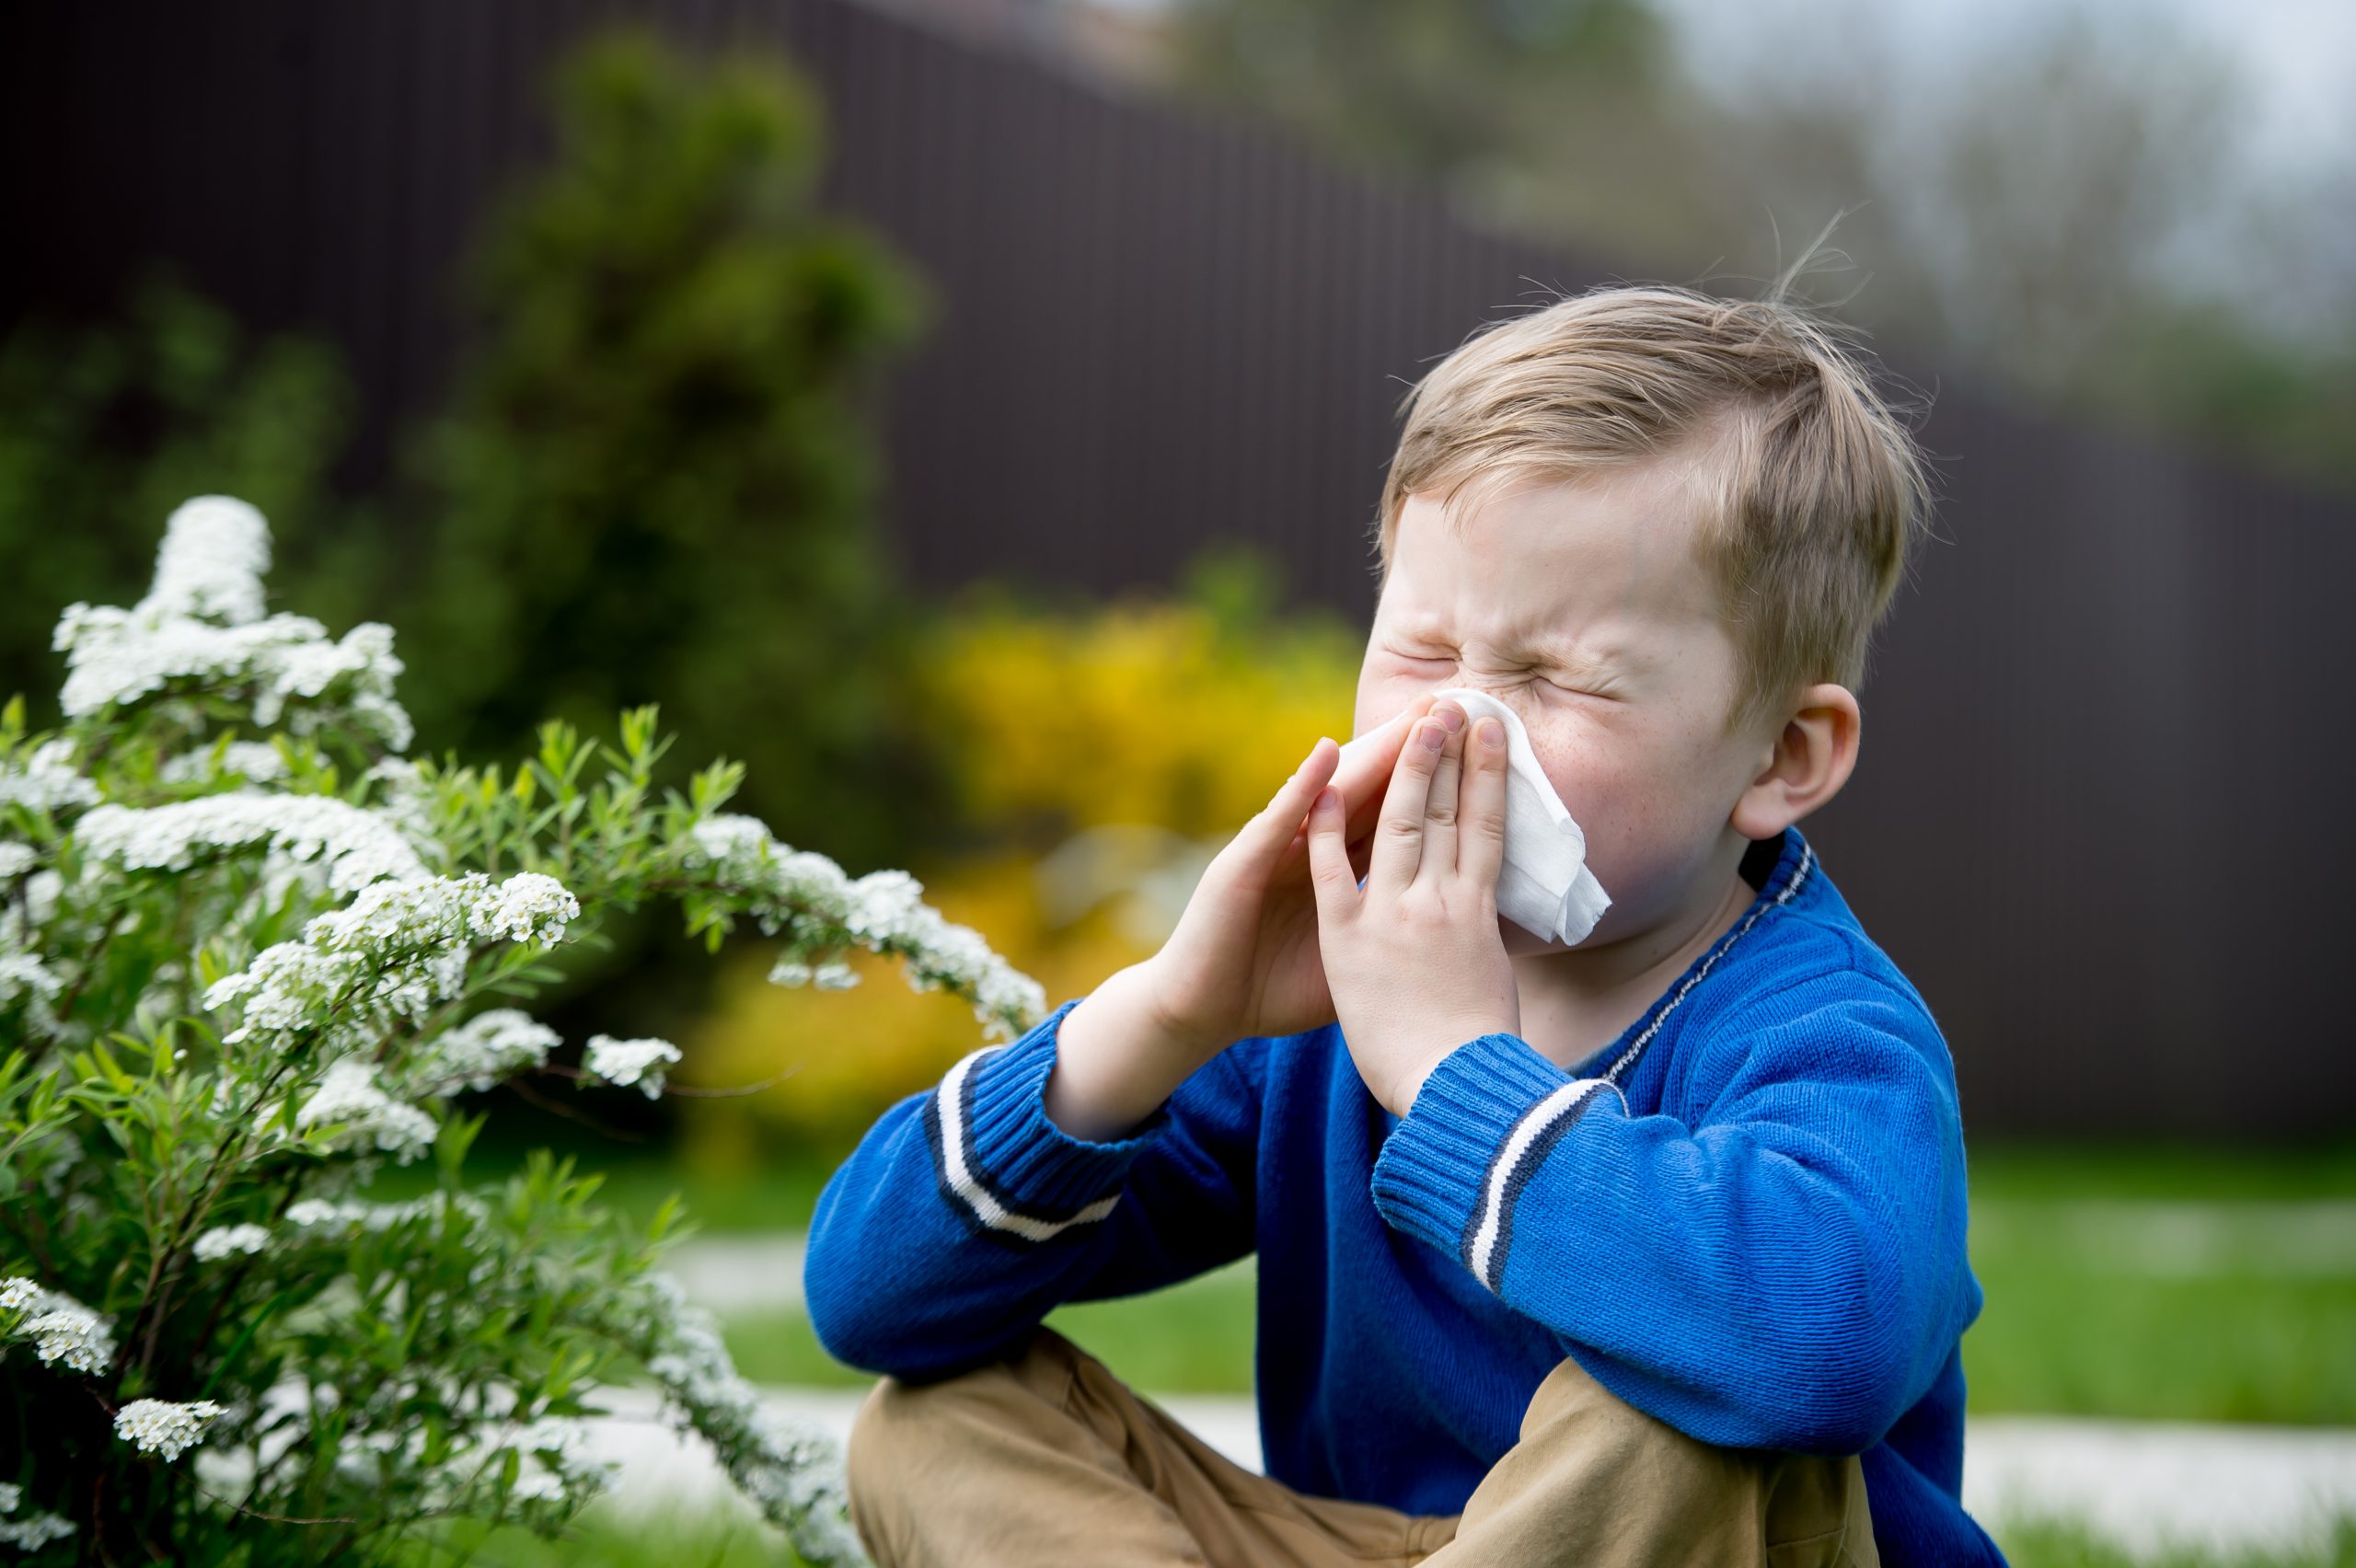 INTERVIU Alergolog Adriana Nicolae: „Până la 3 ani, majoritatea alergiilor dispar” Ce au de făcut părinții